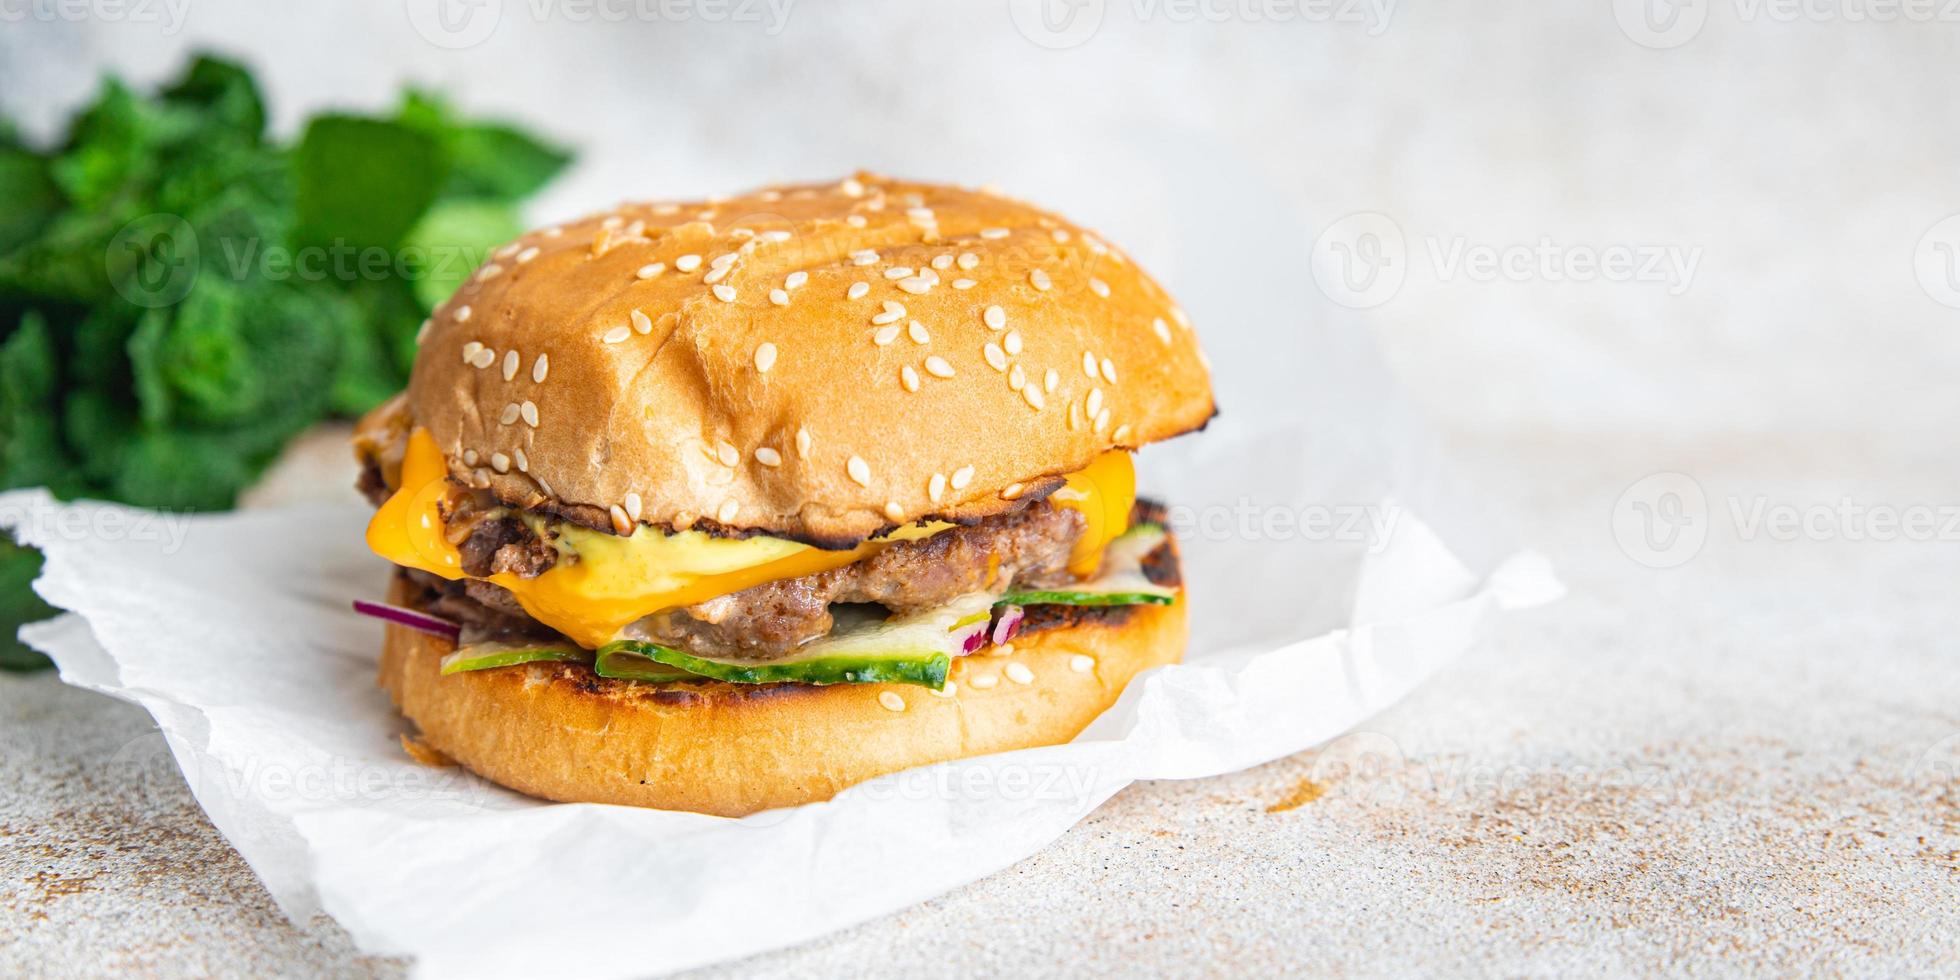 chicken burger sandwich meal snack photo